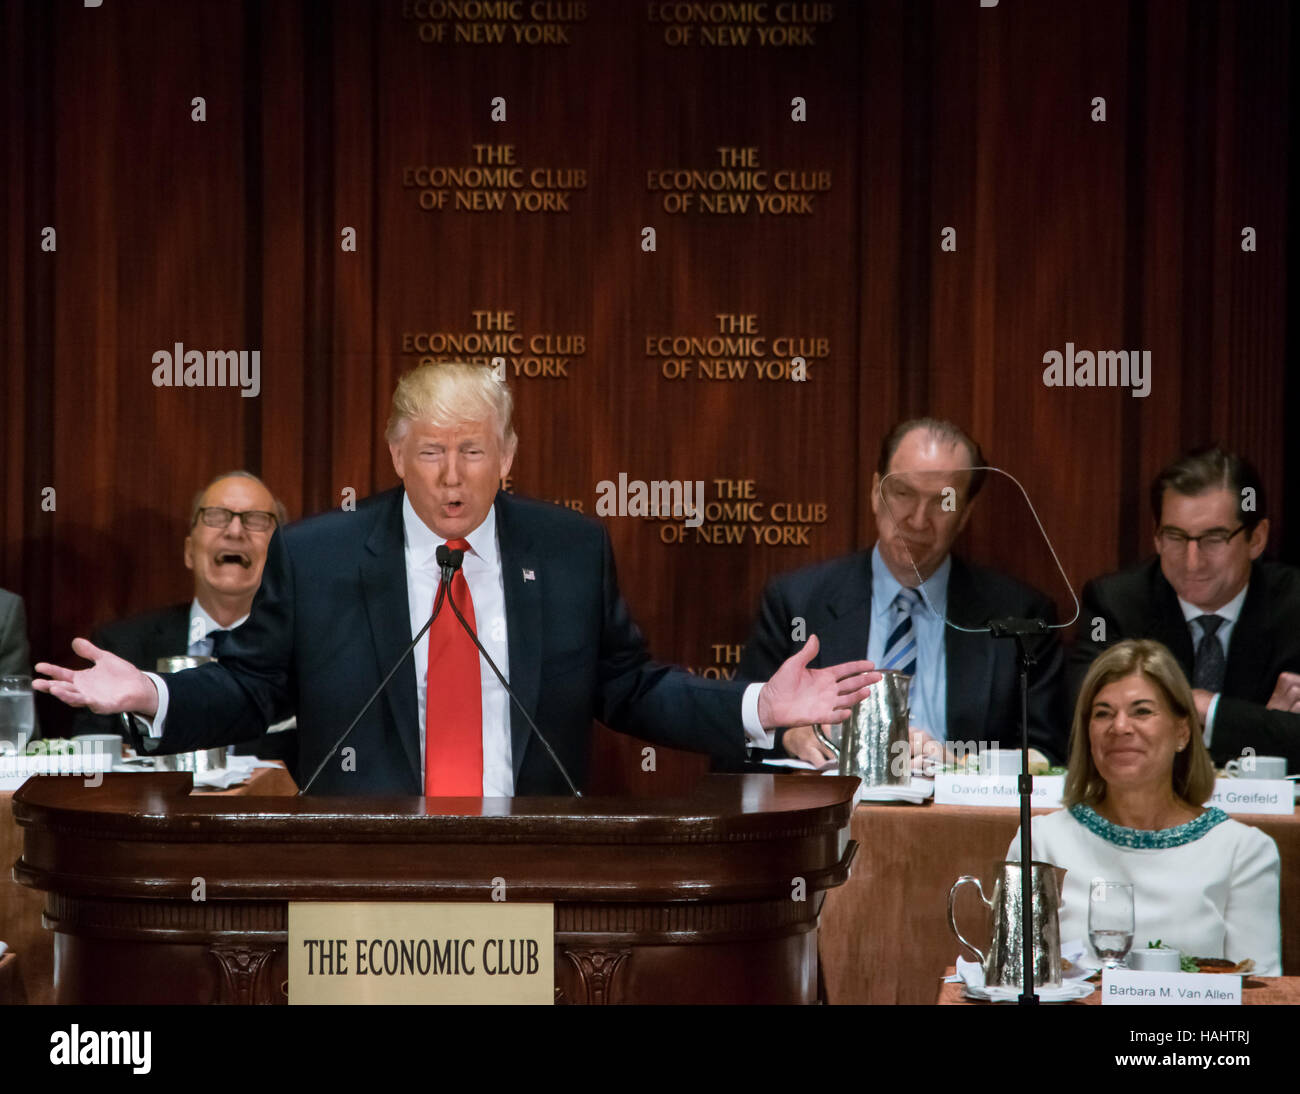 Donald Trump genießt einen heiteren Moment während einer Rede des Economic Club New York im Waldorf Astoria. Stockfoto